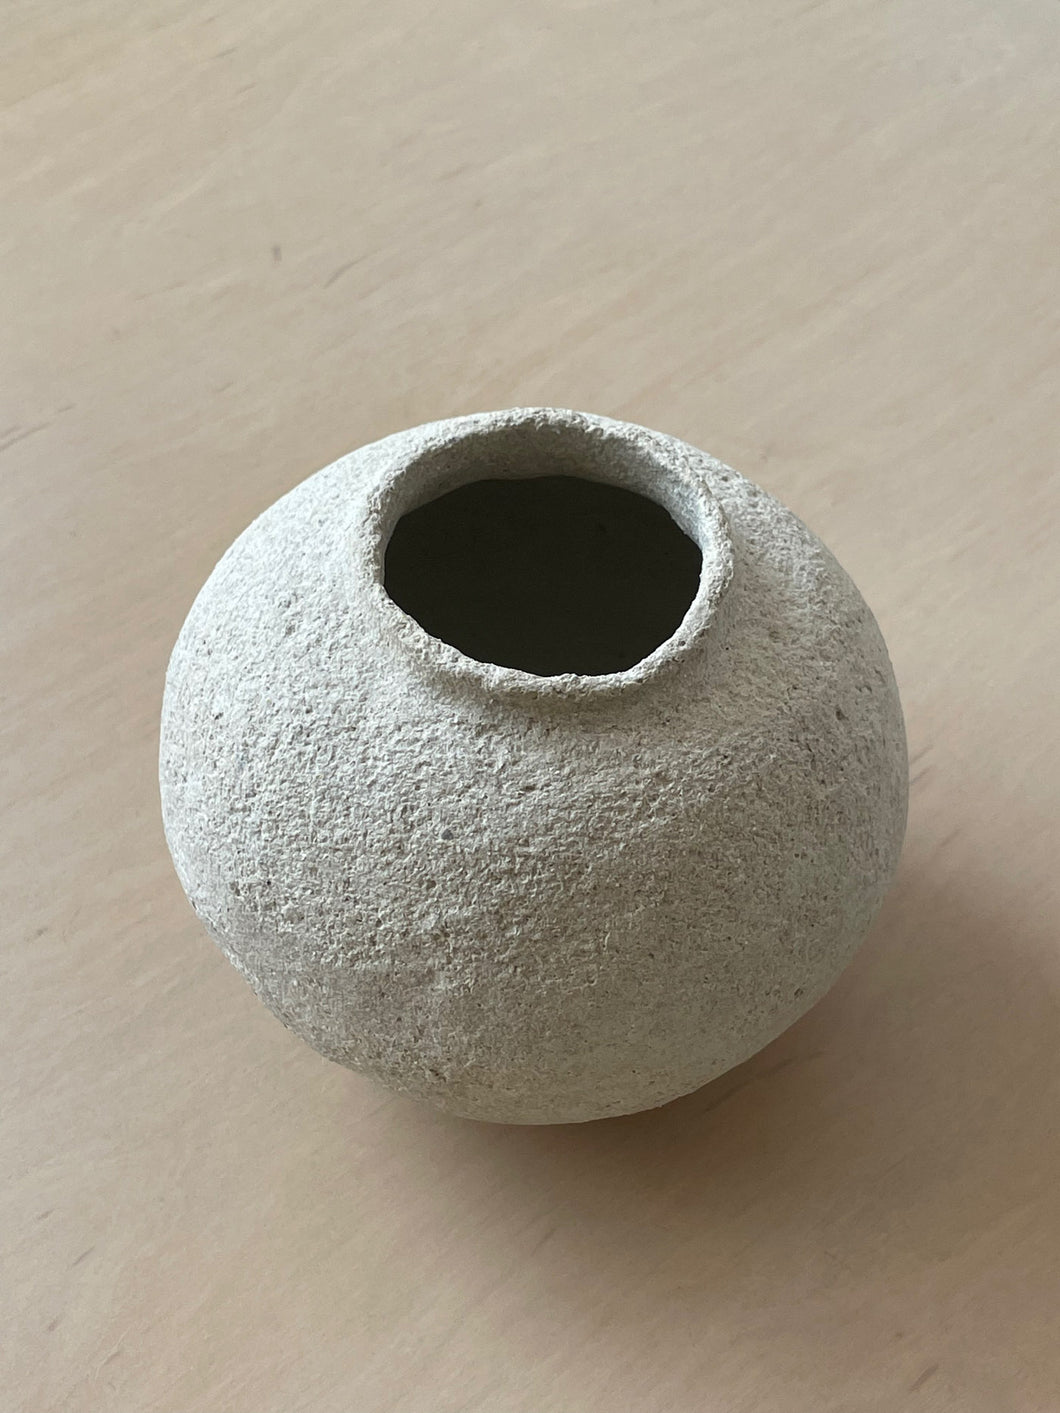 Small Stone Pomegranate Vessel